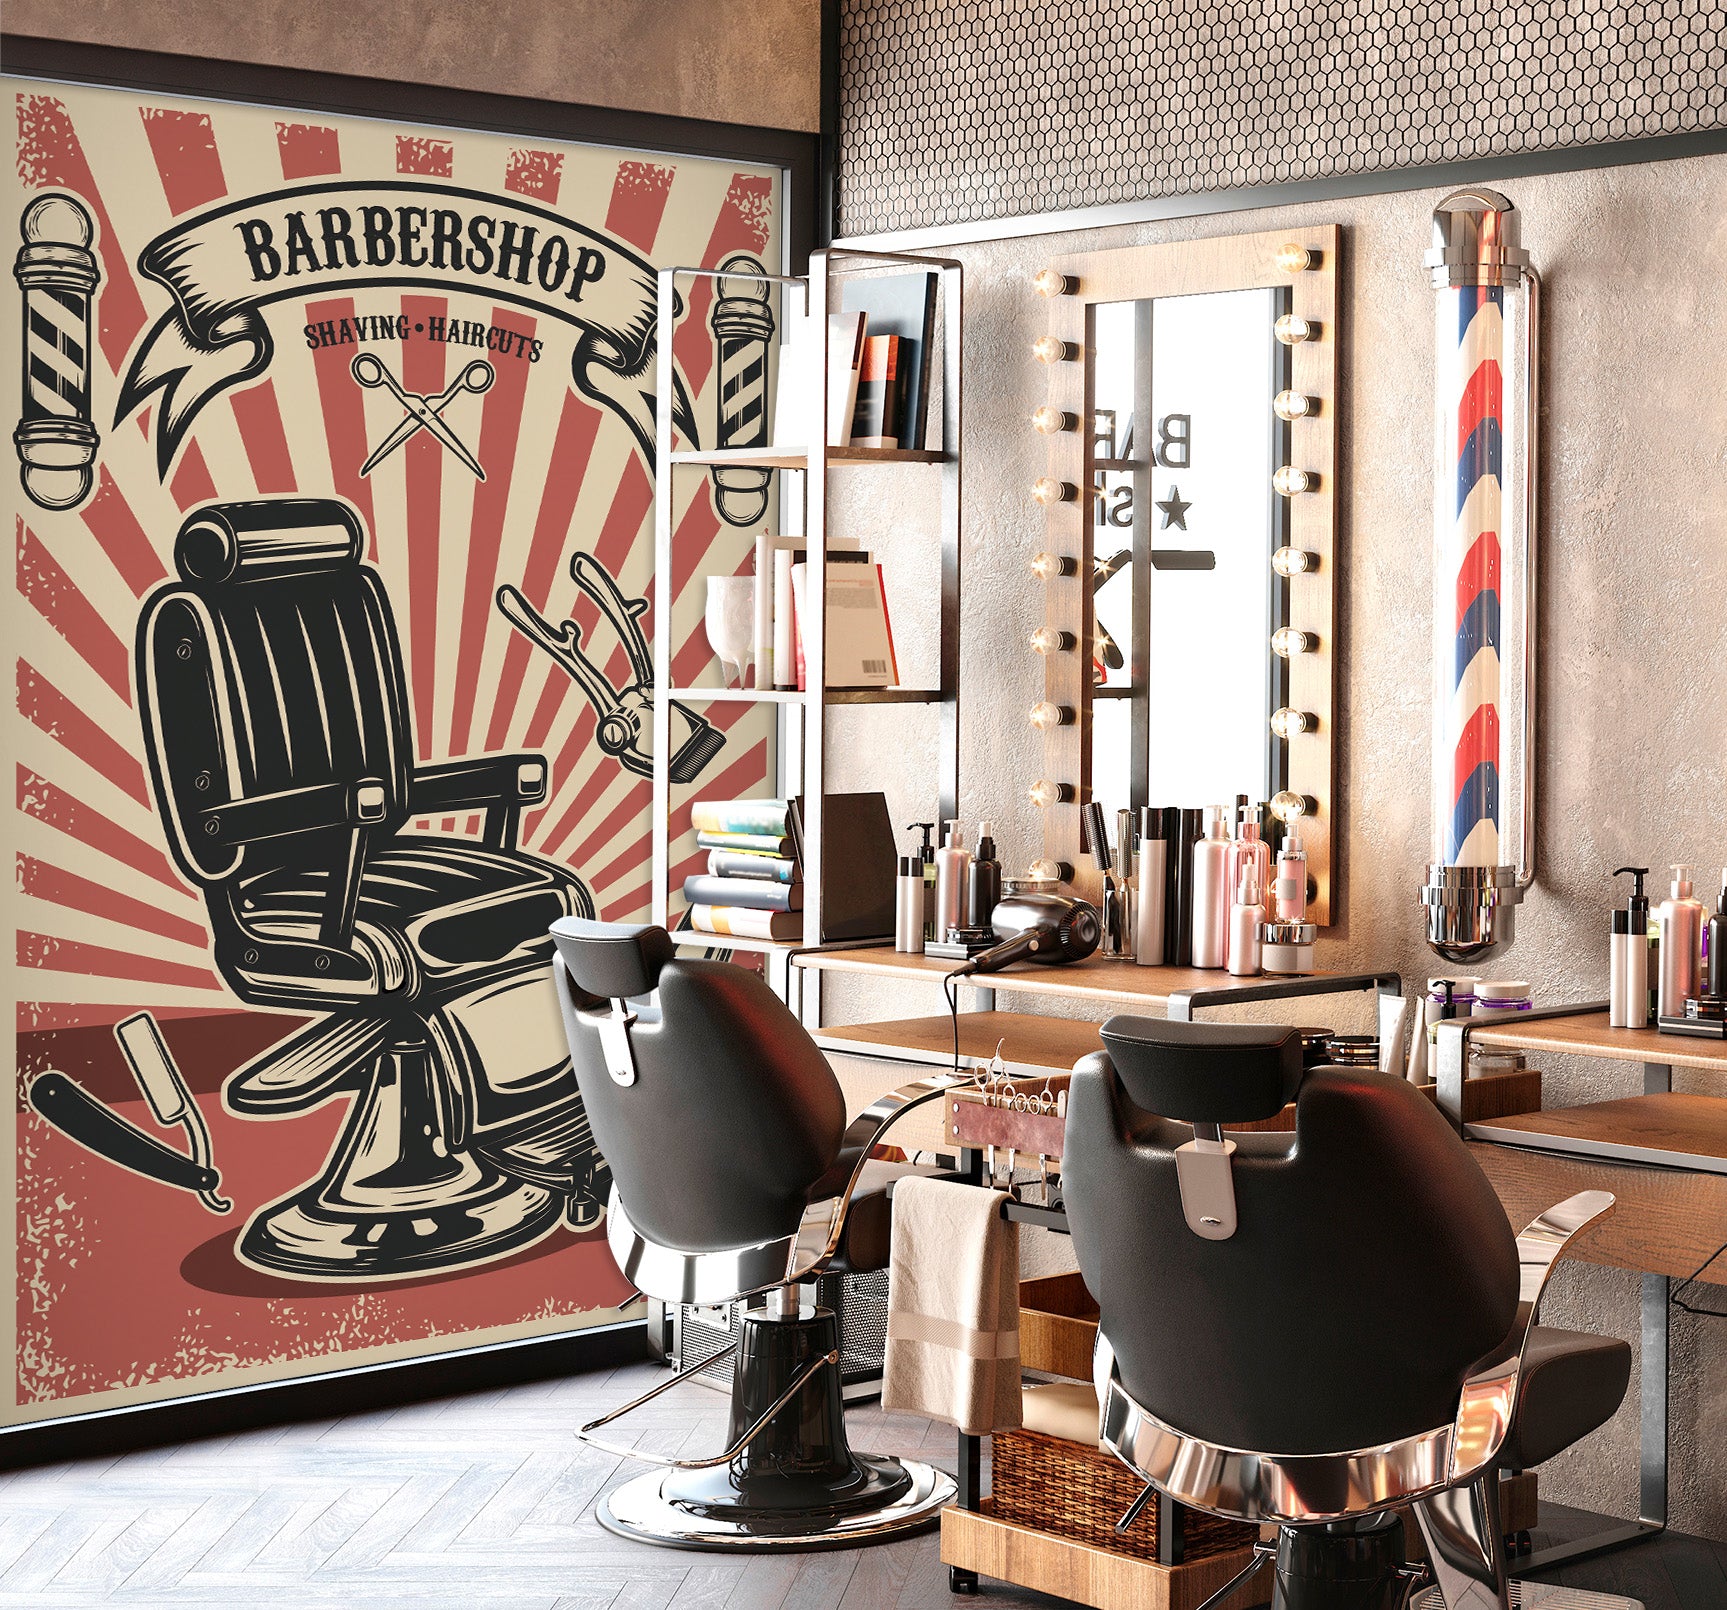 3D Barber Chair 115215 Barber Shop Wall Murals